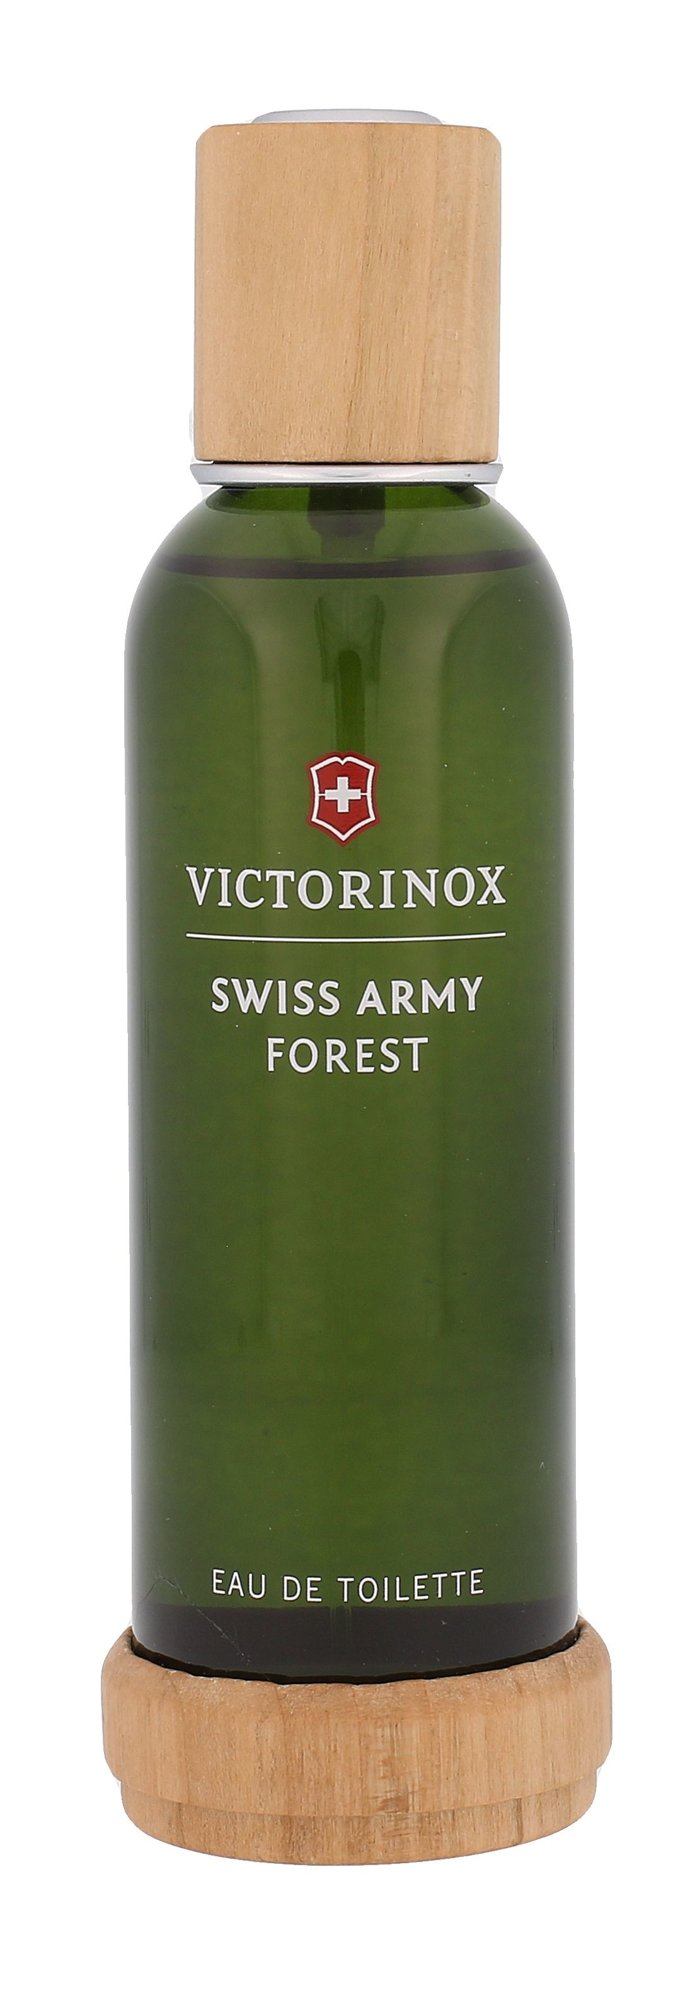 Swiss Army Swiss Army Forest